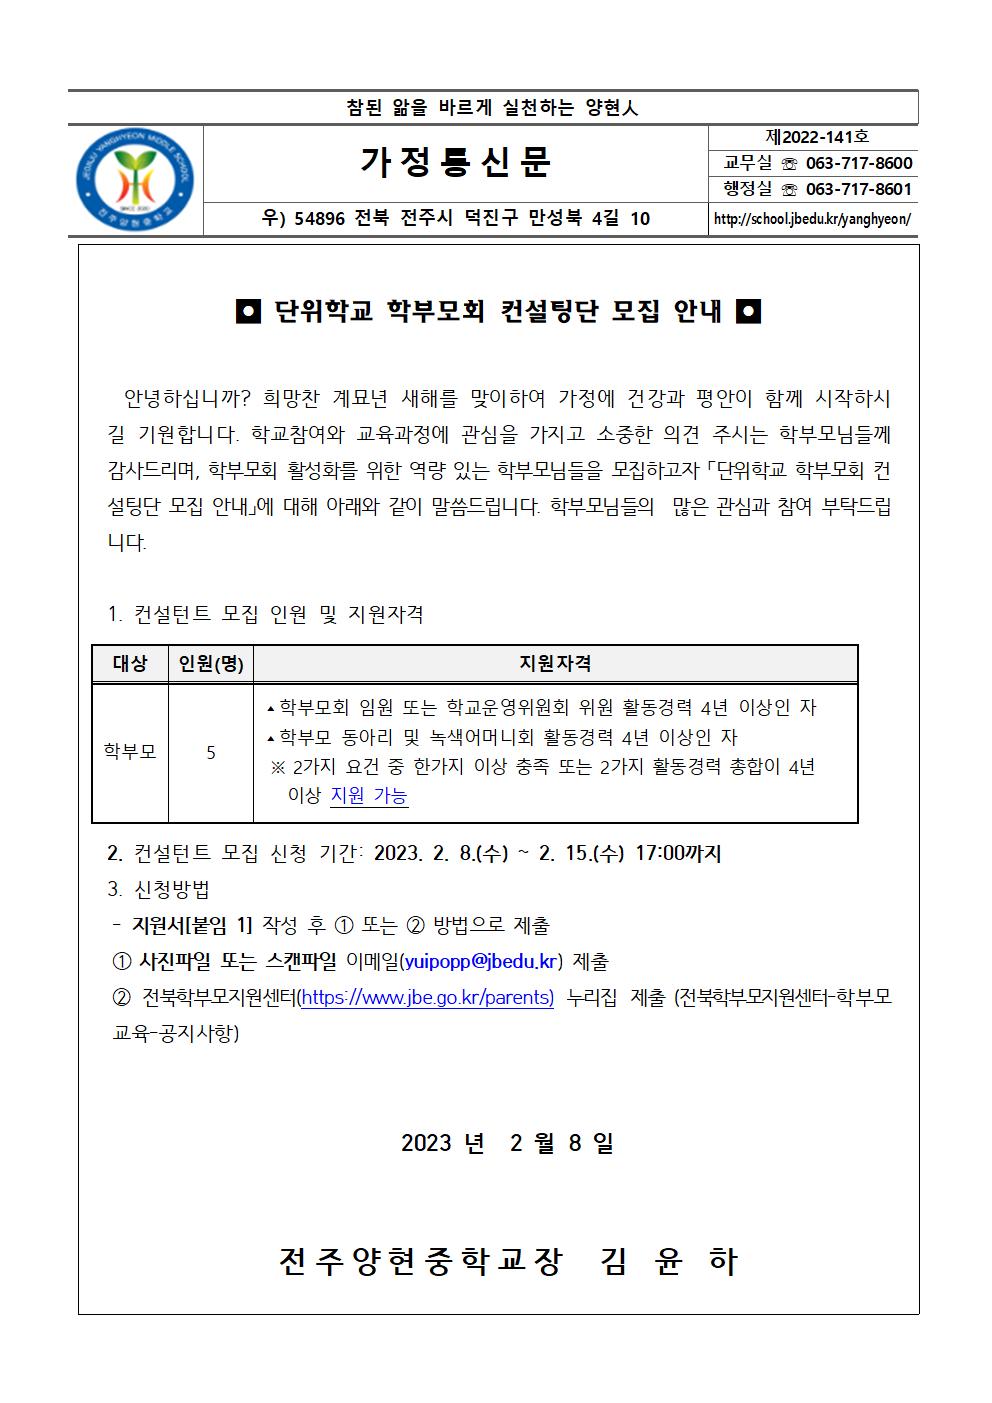 가정통신문 141.단위학교 학부모회 컨설팅단 모집 안내를 위한 통신문001